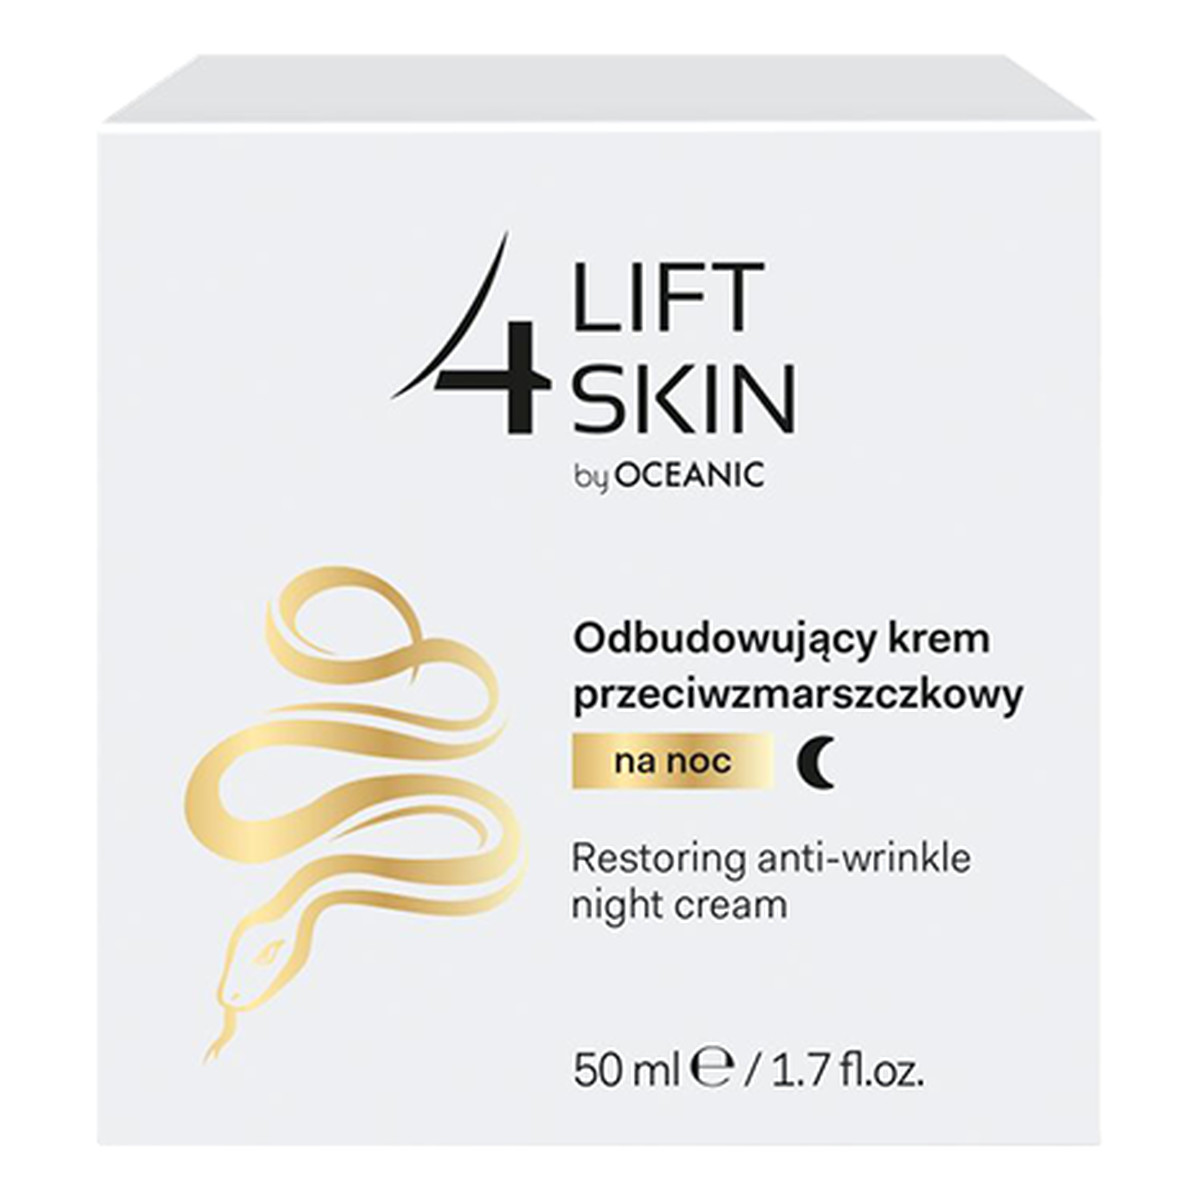 Lift 4 Skin Odbudowujący krem przeciwzmarszczkowy na noc 50ml